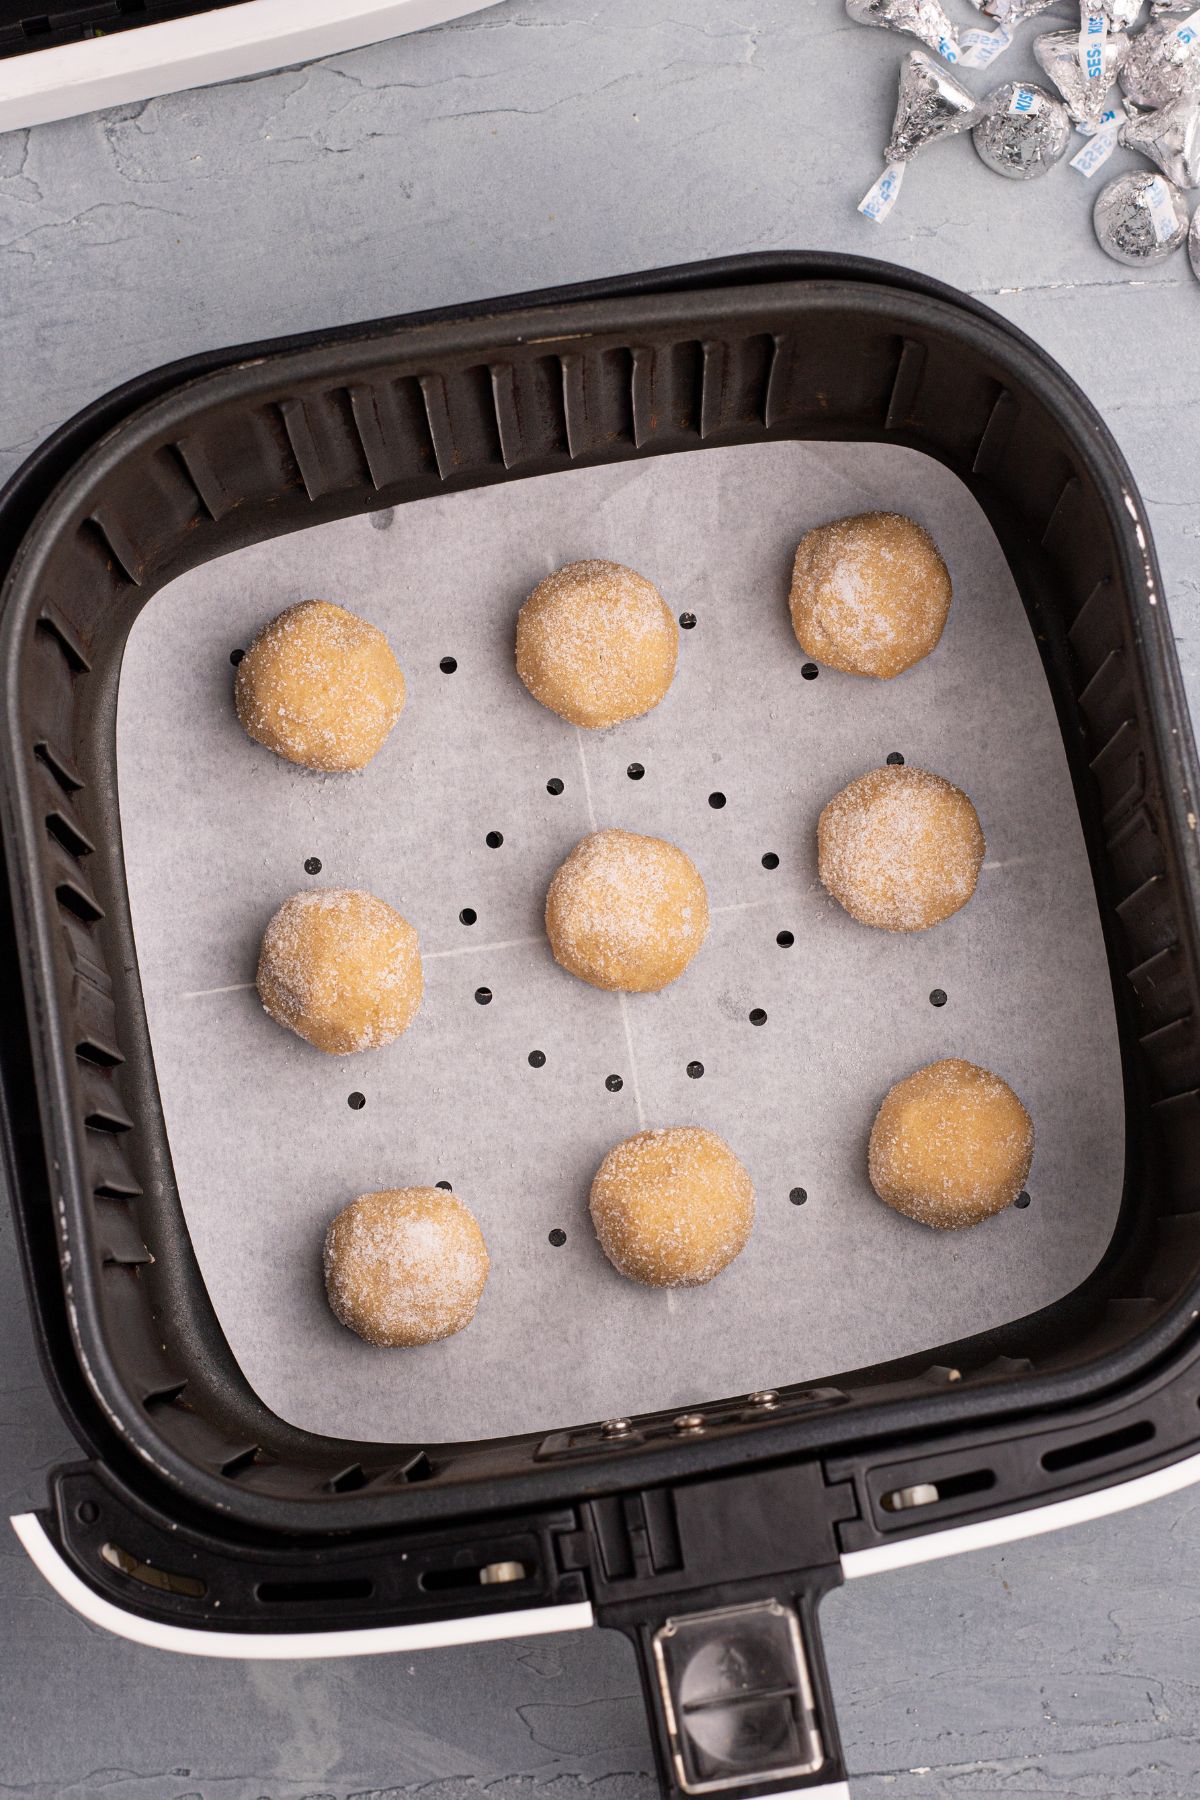 Peanut butter dough balls in an air fryer basket